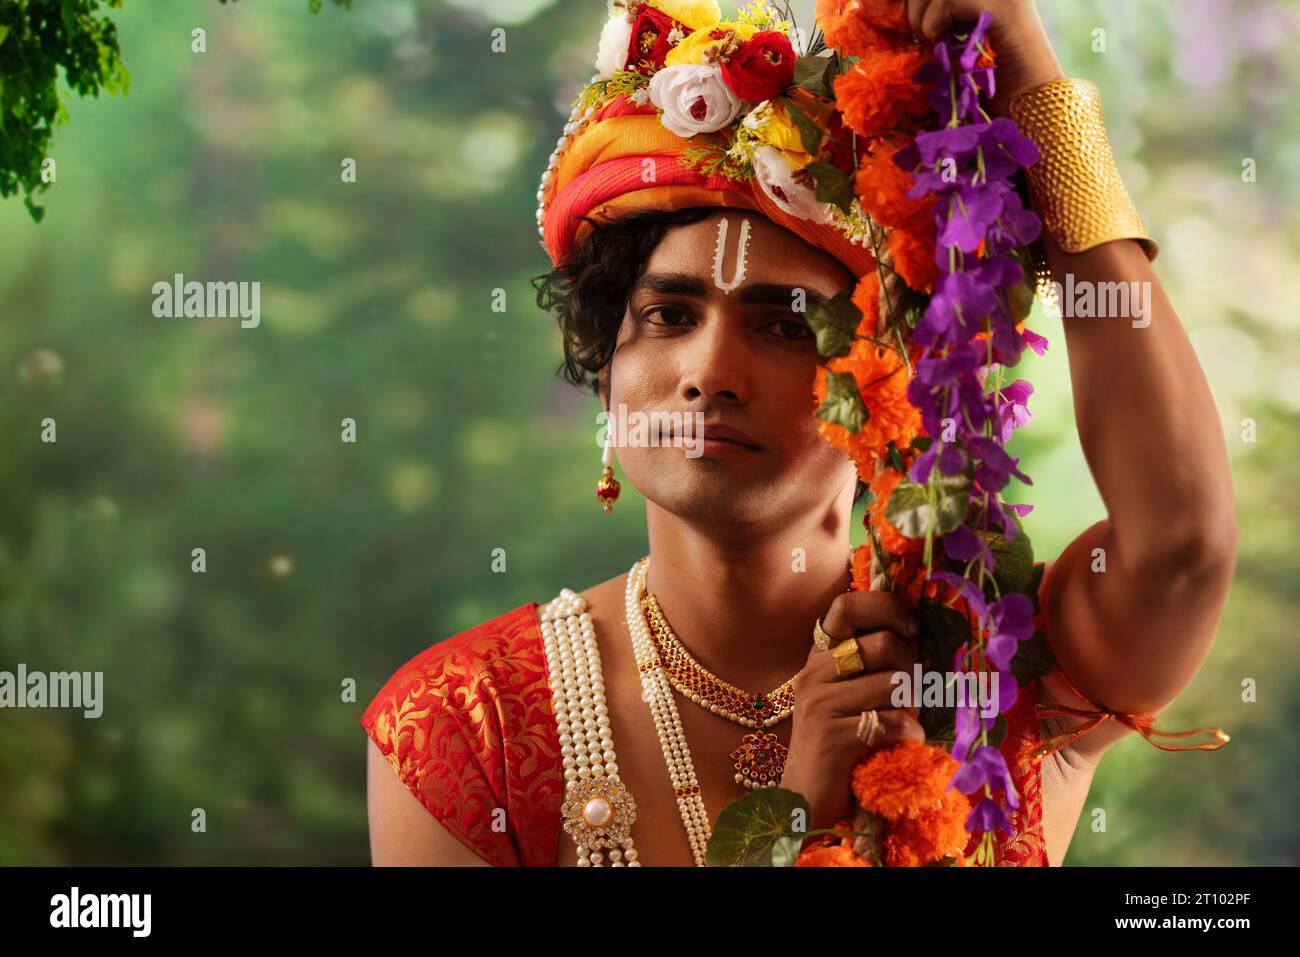 Porträt eines jungen Mannes, der als Lord Krishna verkleidet ist und anlässlich des Janmashtami auf einer Schaukel sitzt Stockfoto